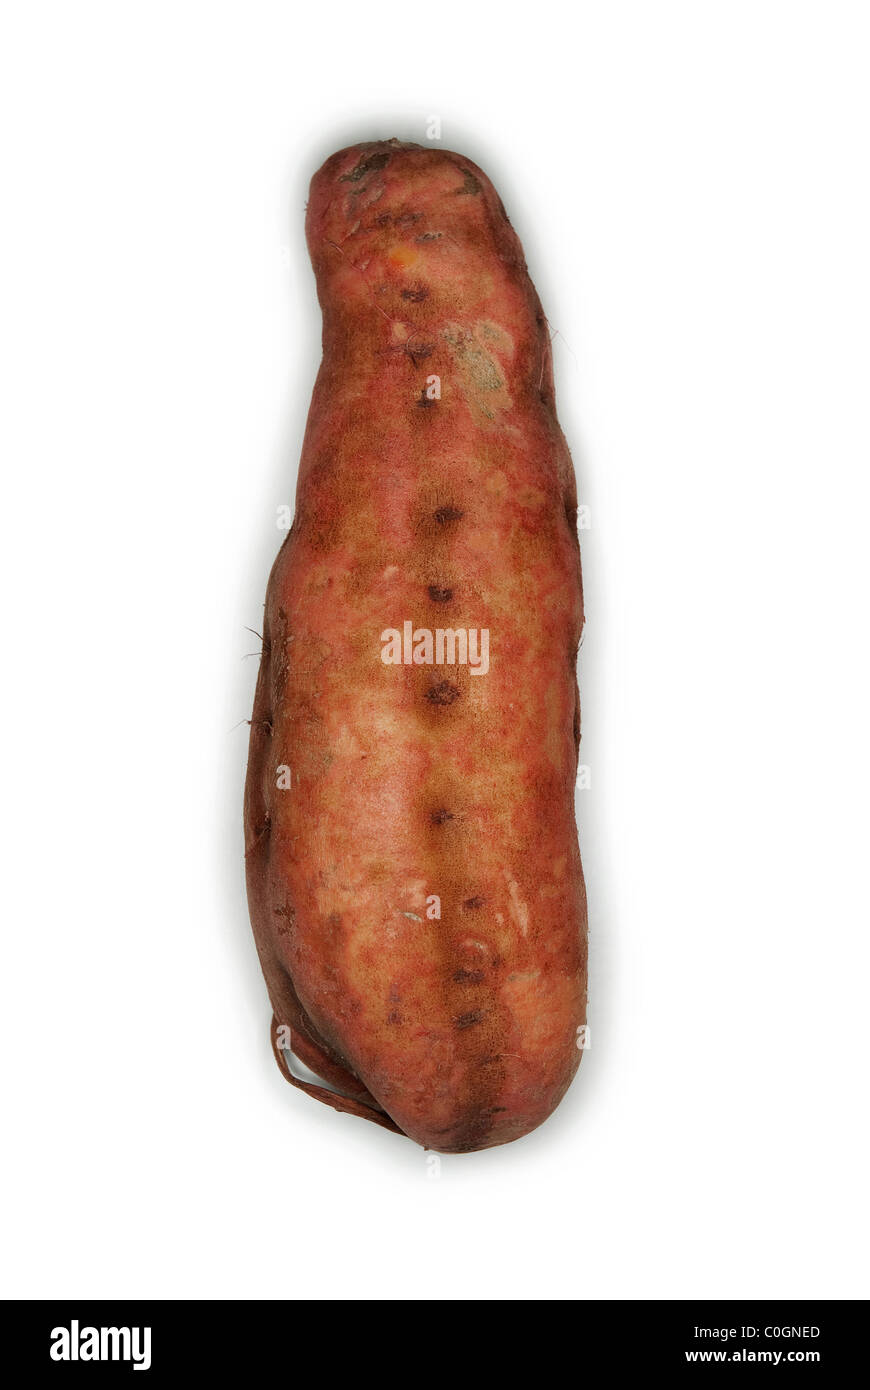 Sweet potato on white background Stock Photo